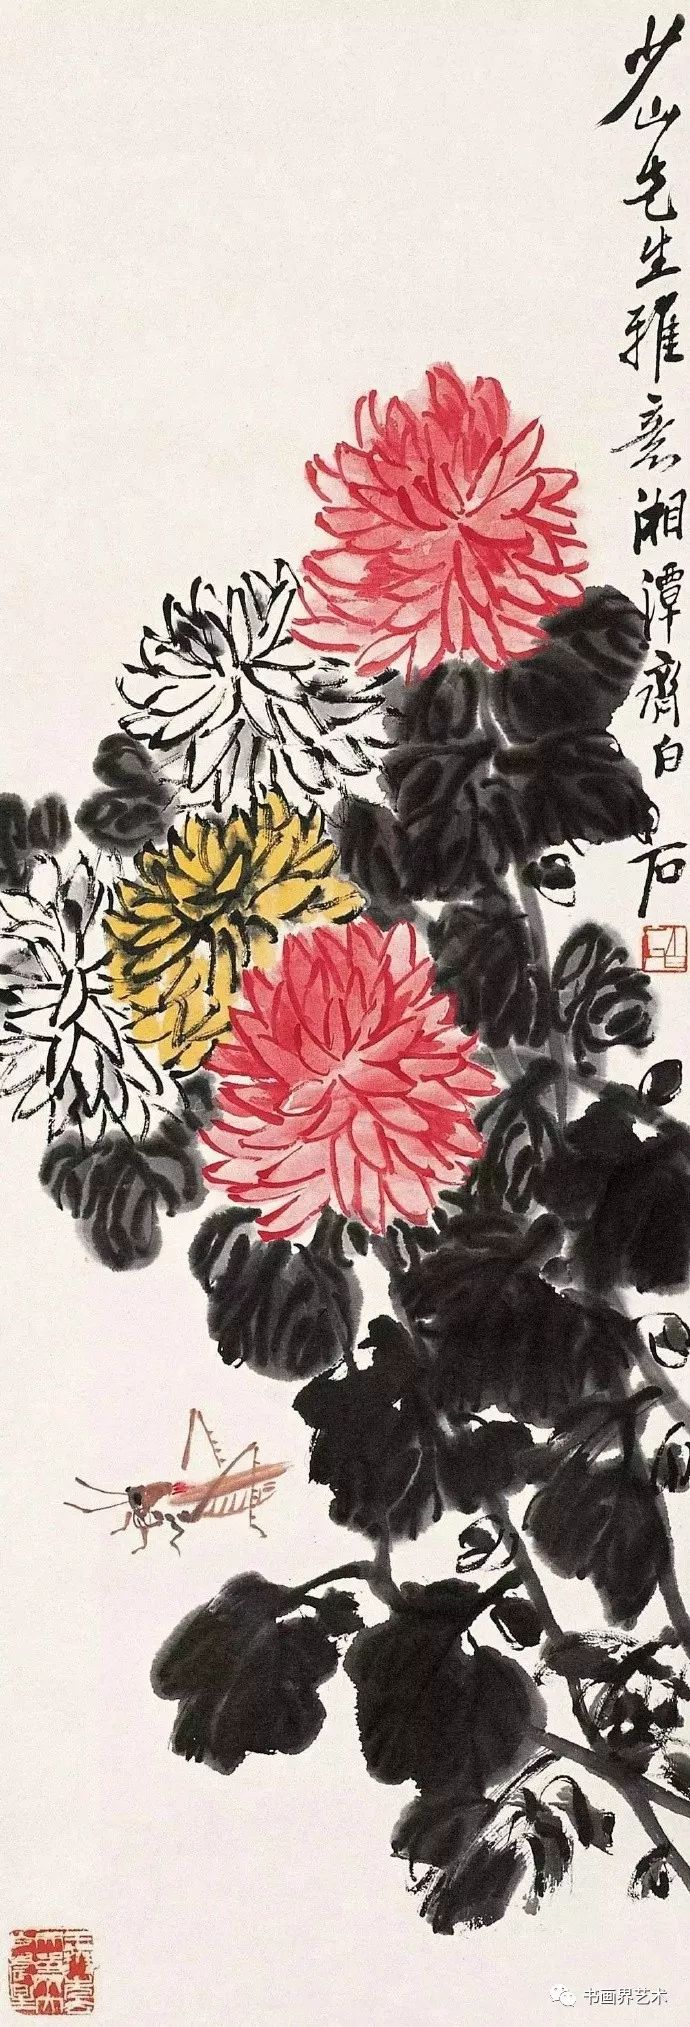 王雪涛画菊,注重整颗菊花整体的外形,而且都有意增加花朵与叶子的大小